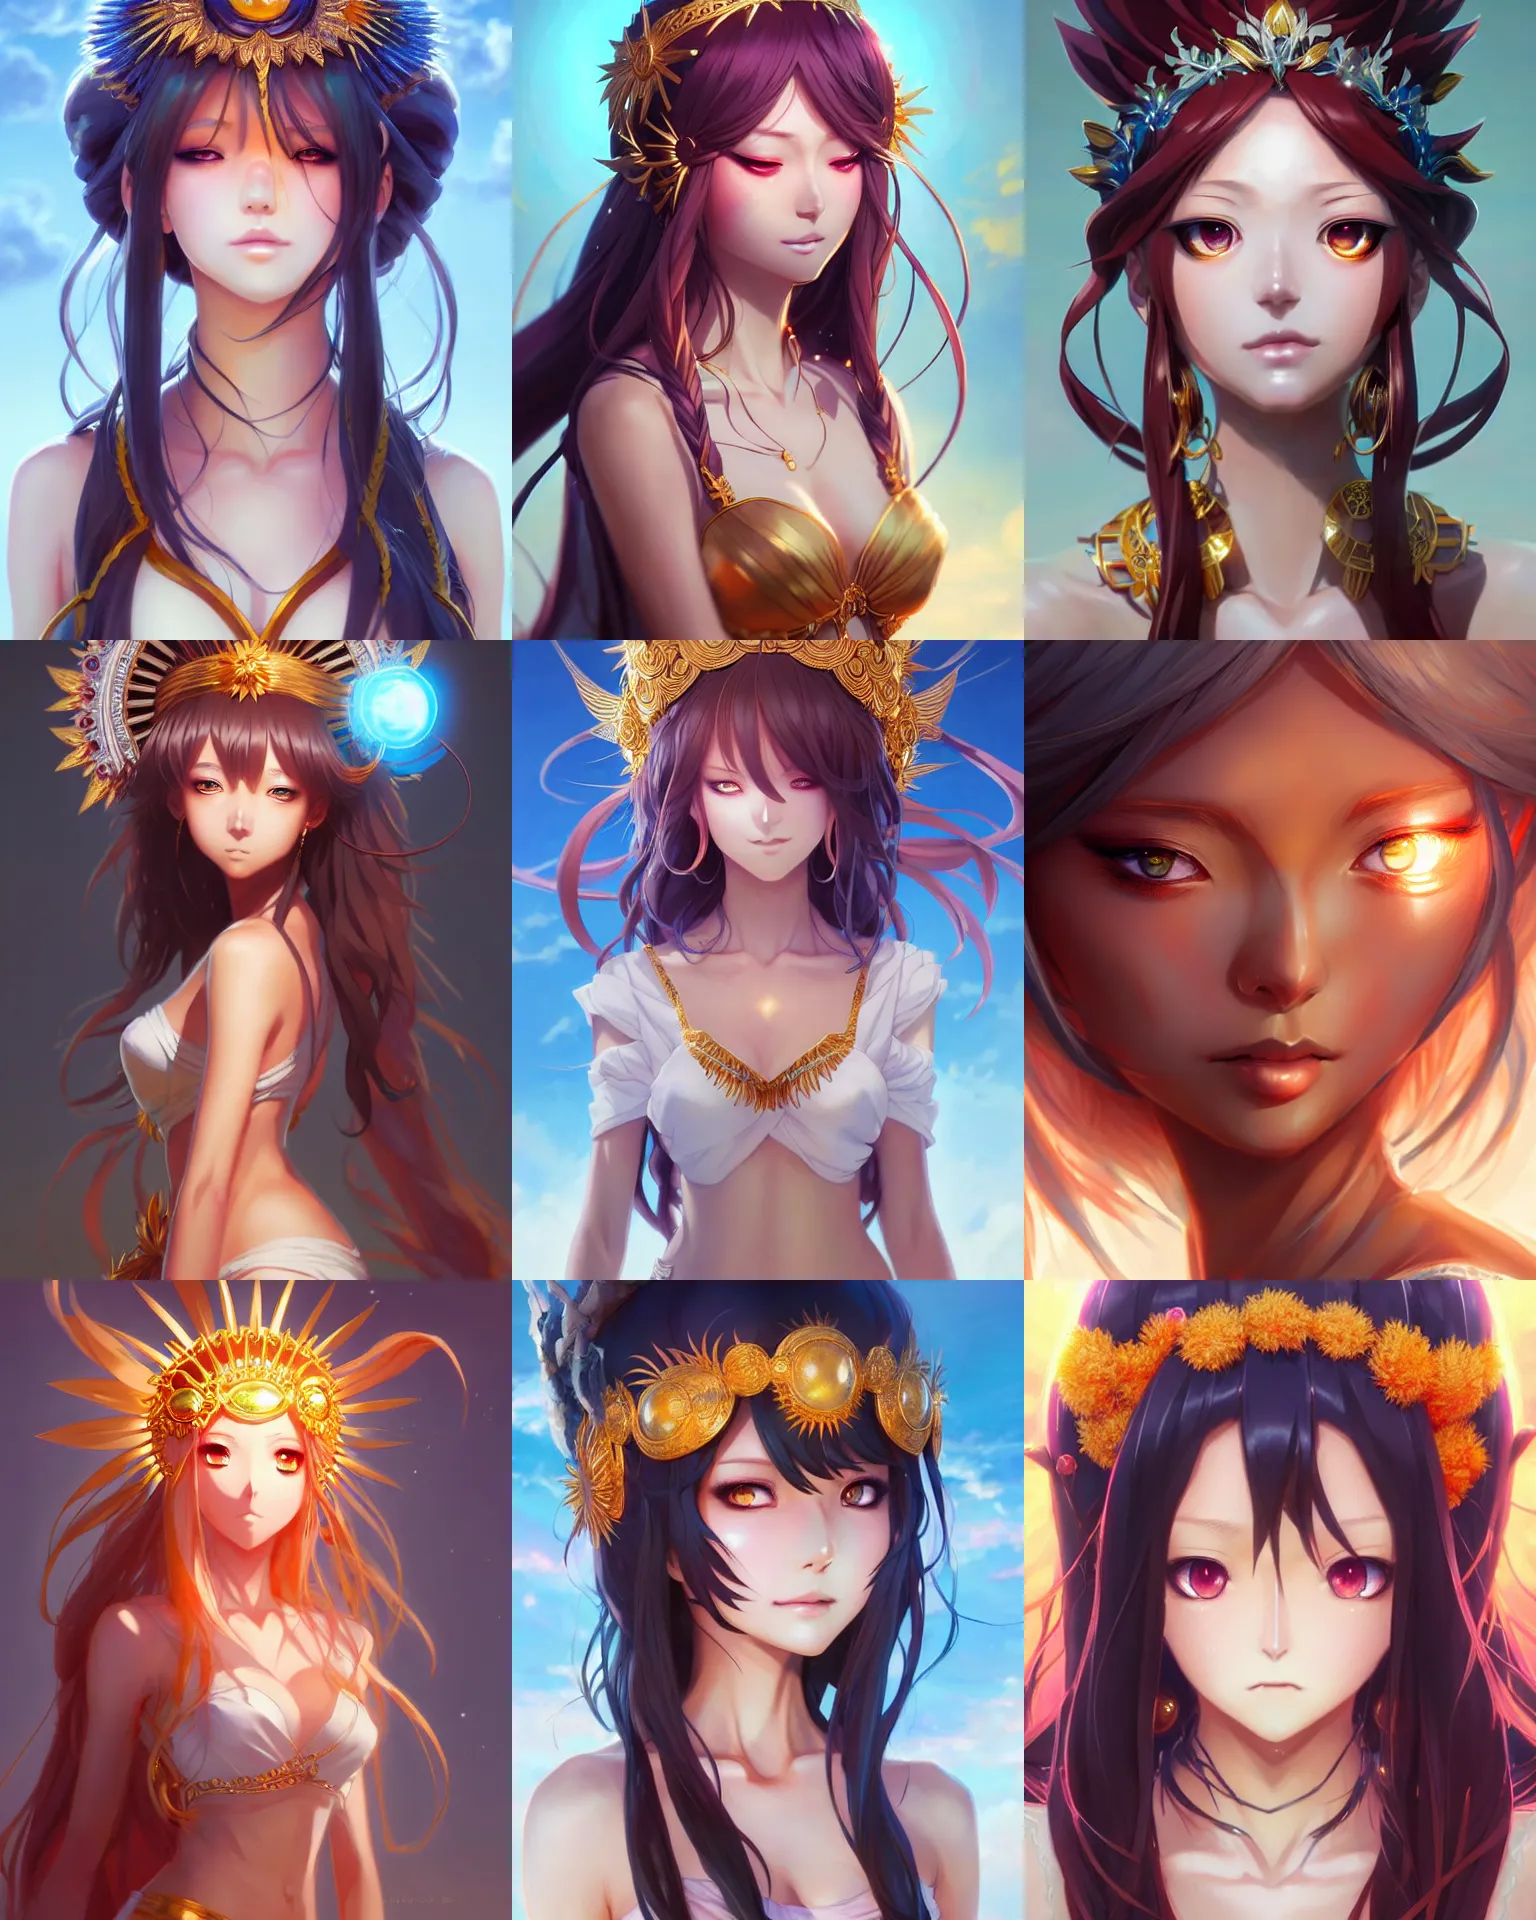 She Seen Goddess Sun Universe Japanese Stock Illustration 1157398081   Shutterstock